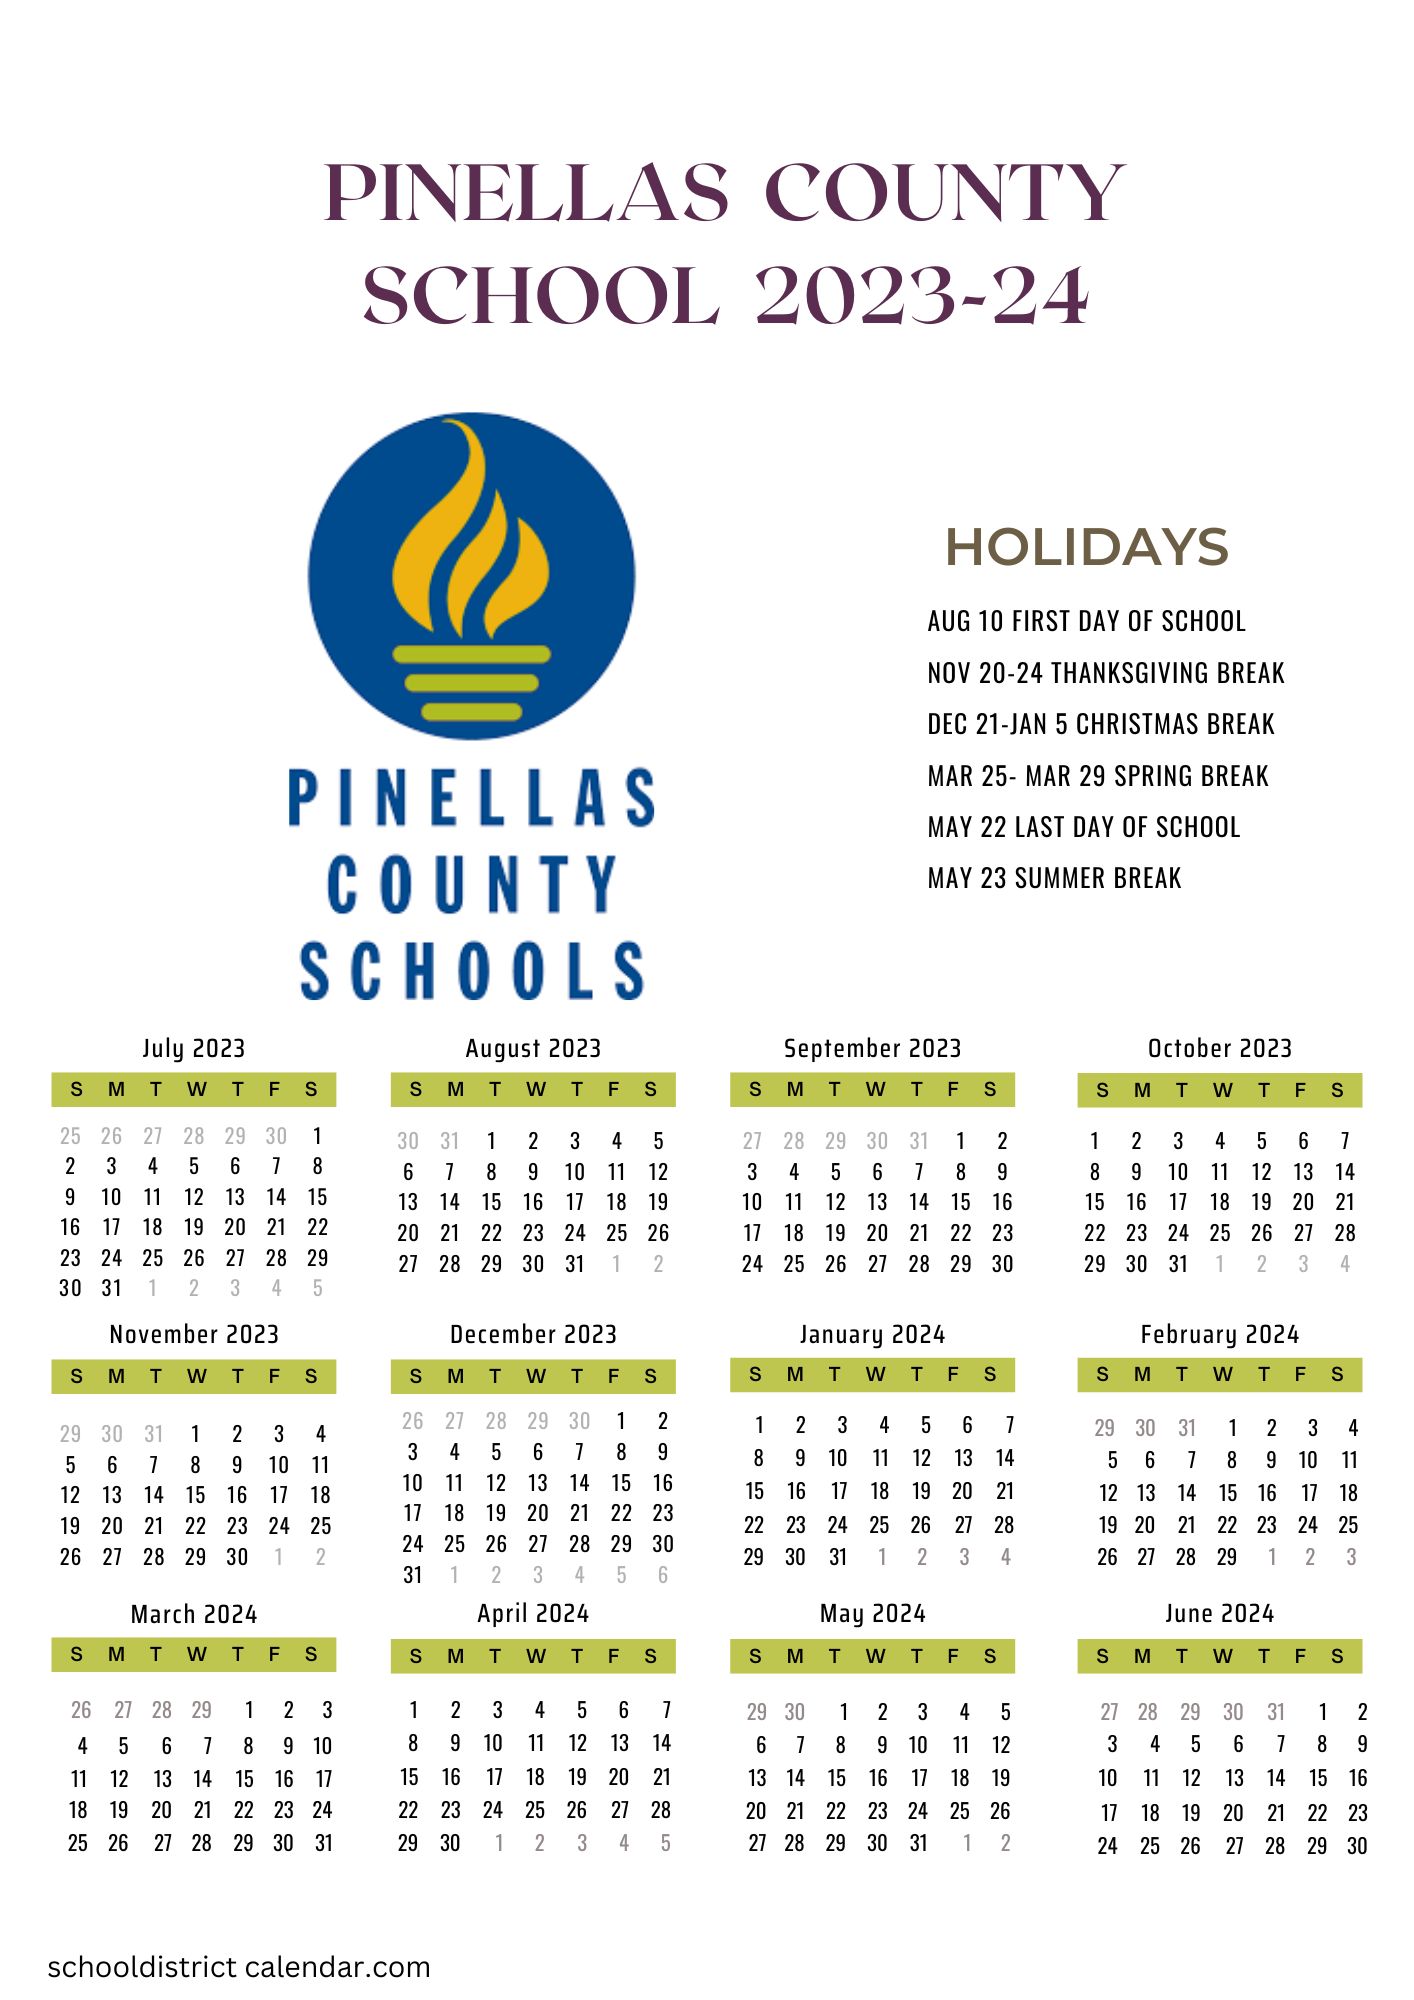 pinellas-county-schools-calendar-holidays-2023-2024